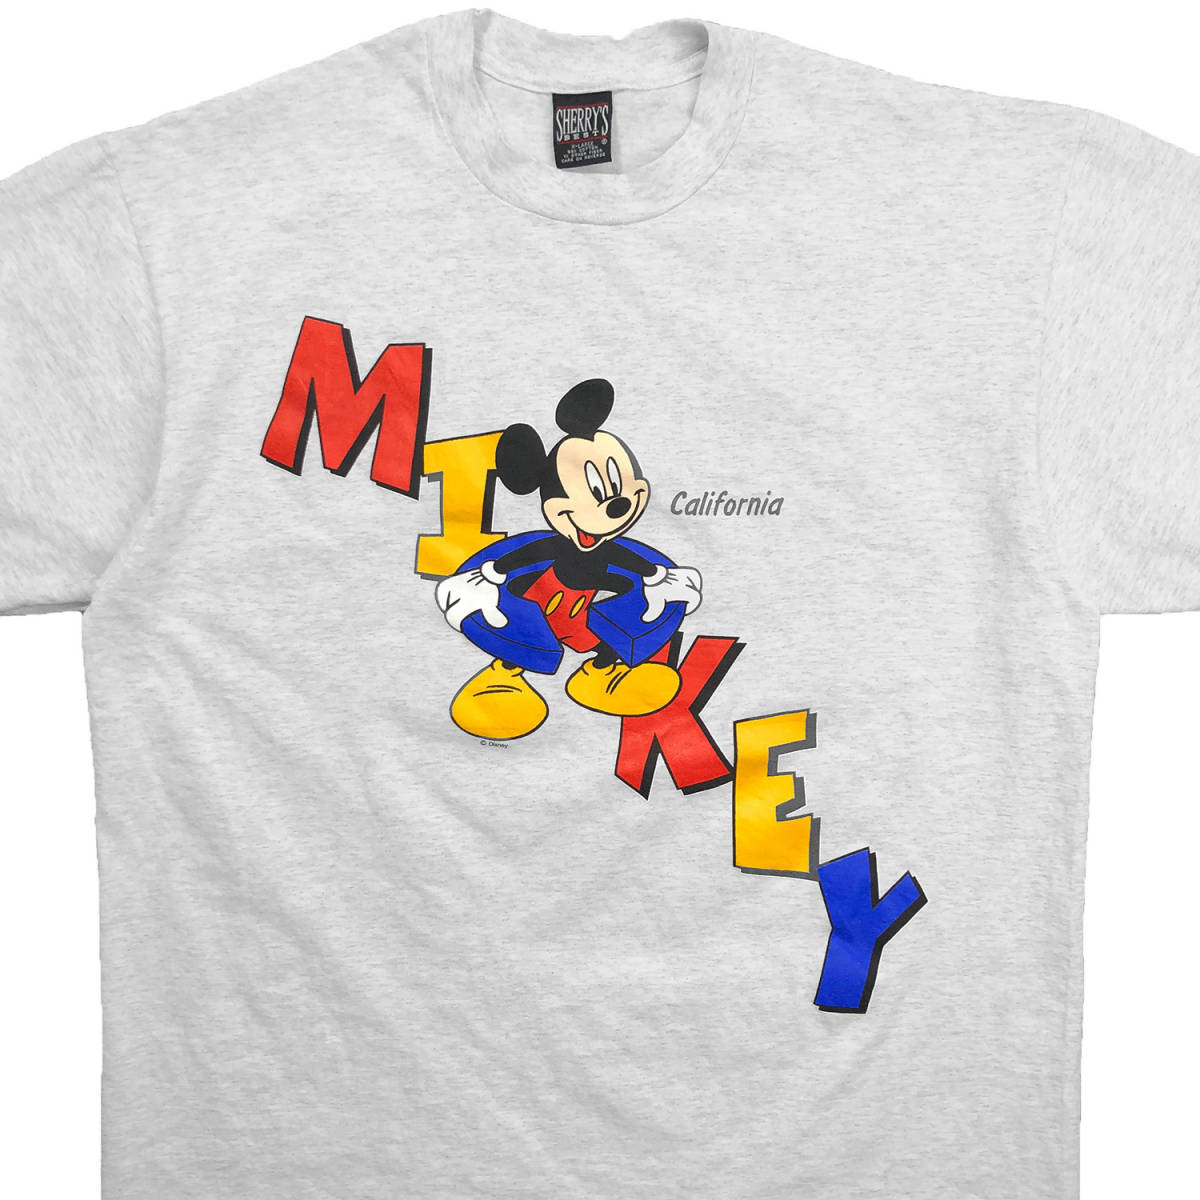 90S USA製 ヴィンテージ ディズニー ミッキーマウス キャラクター Tシャツ ライトグレー メンズXL 大きいサイズ 古着 Disney  BA1854